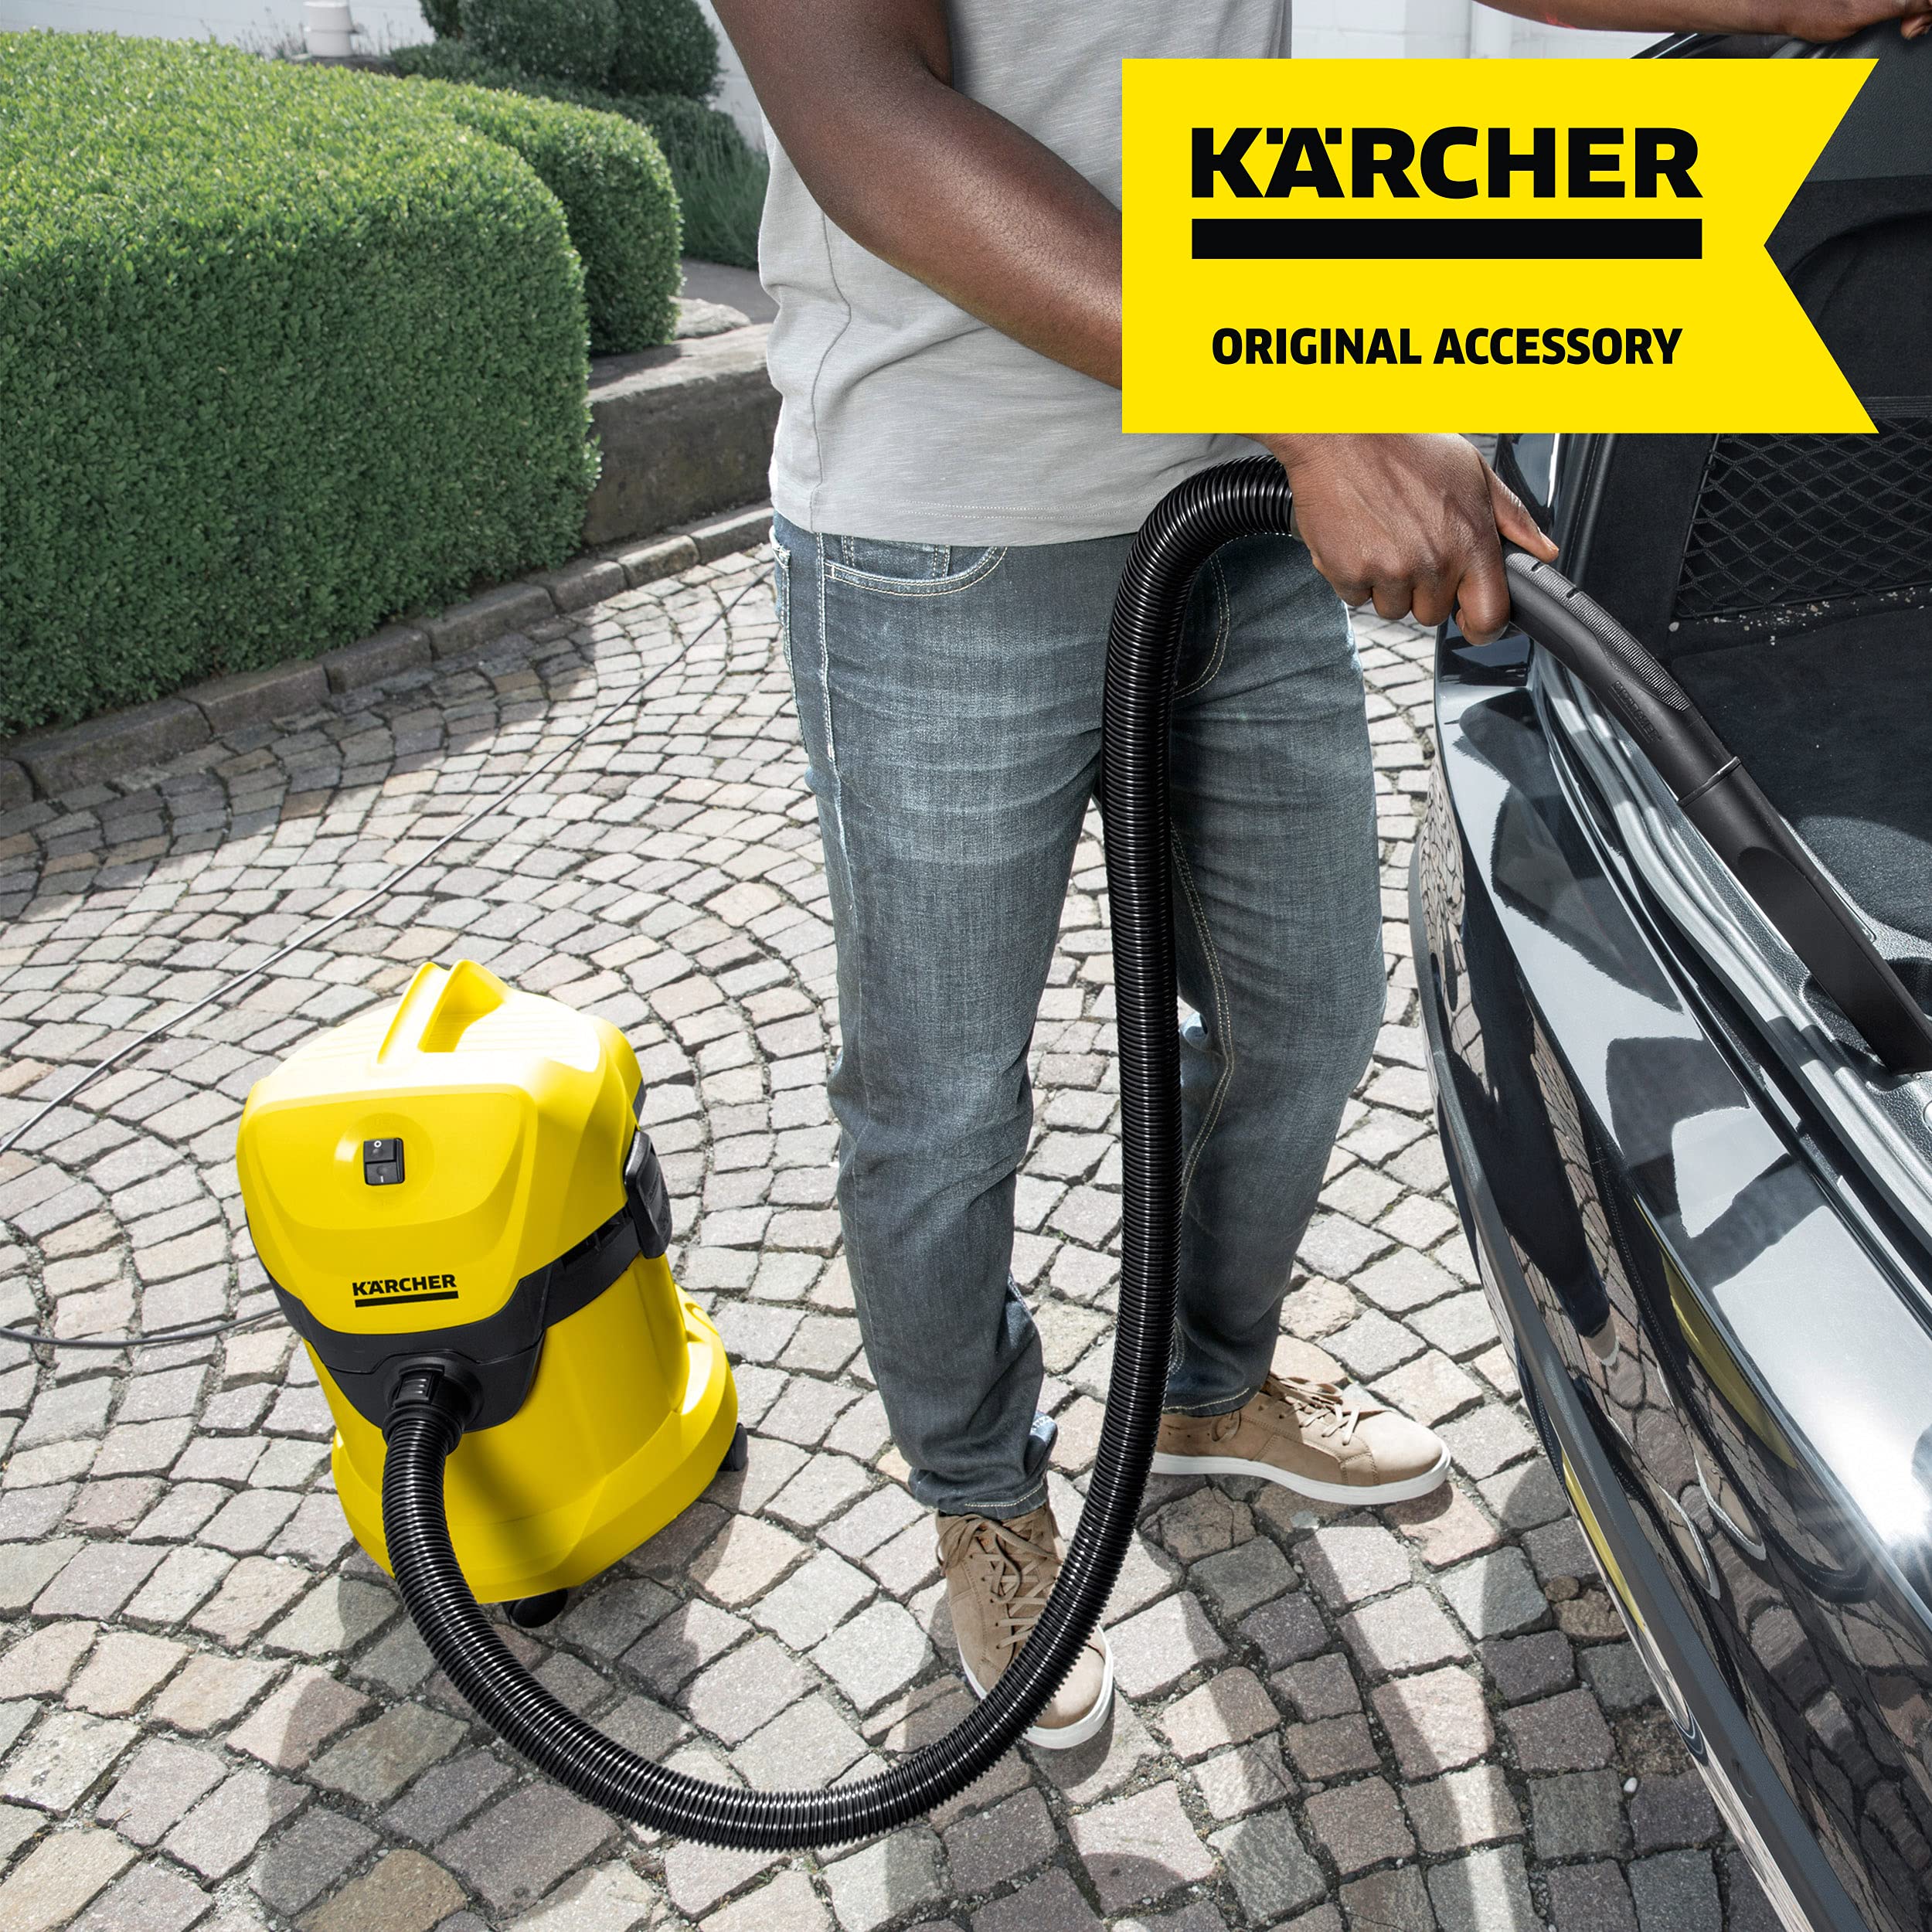 Karcher 6.959-130.0, Karcher Wd3p Bag, Karcher Wd3 Bag, Vacuum Cleaner